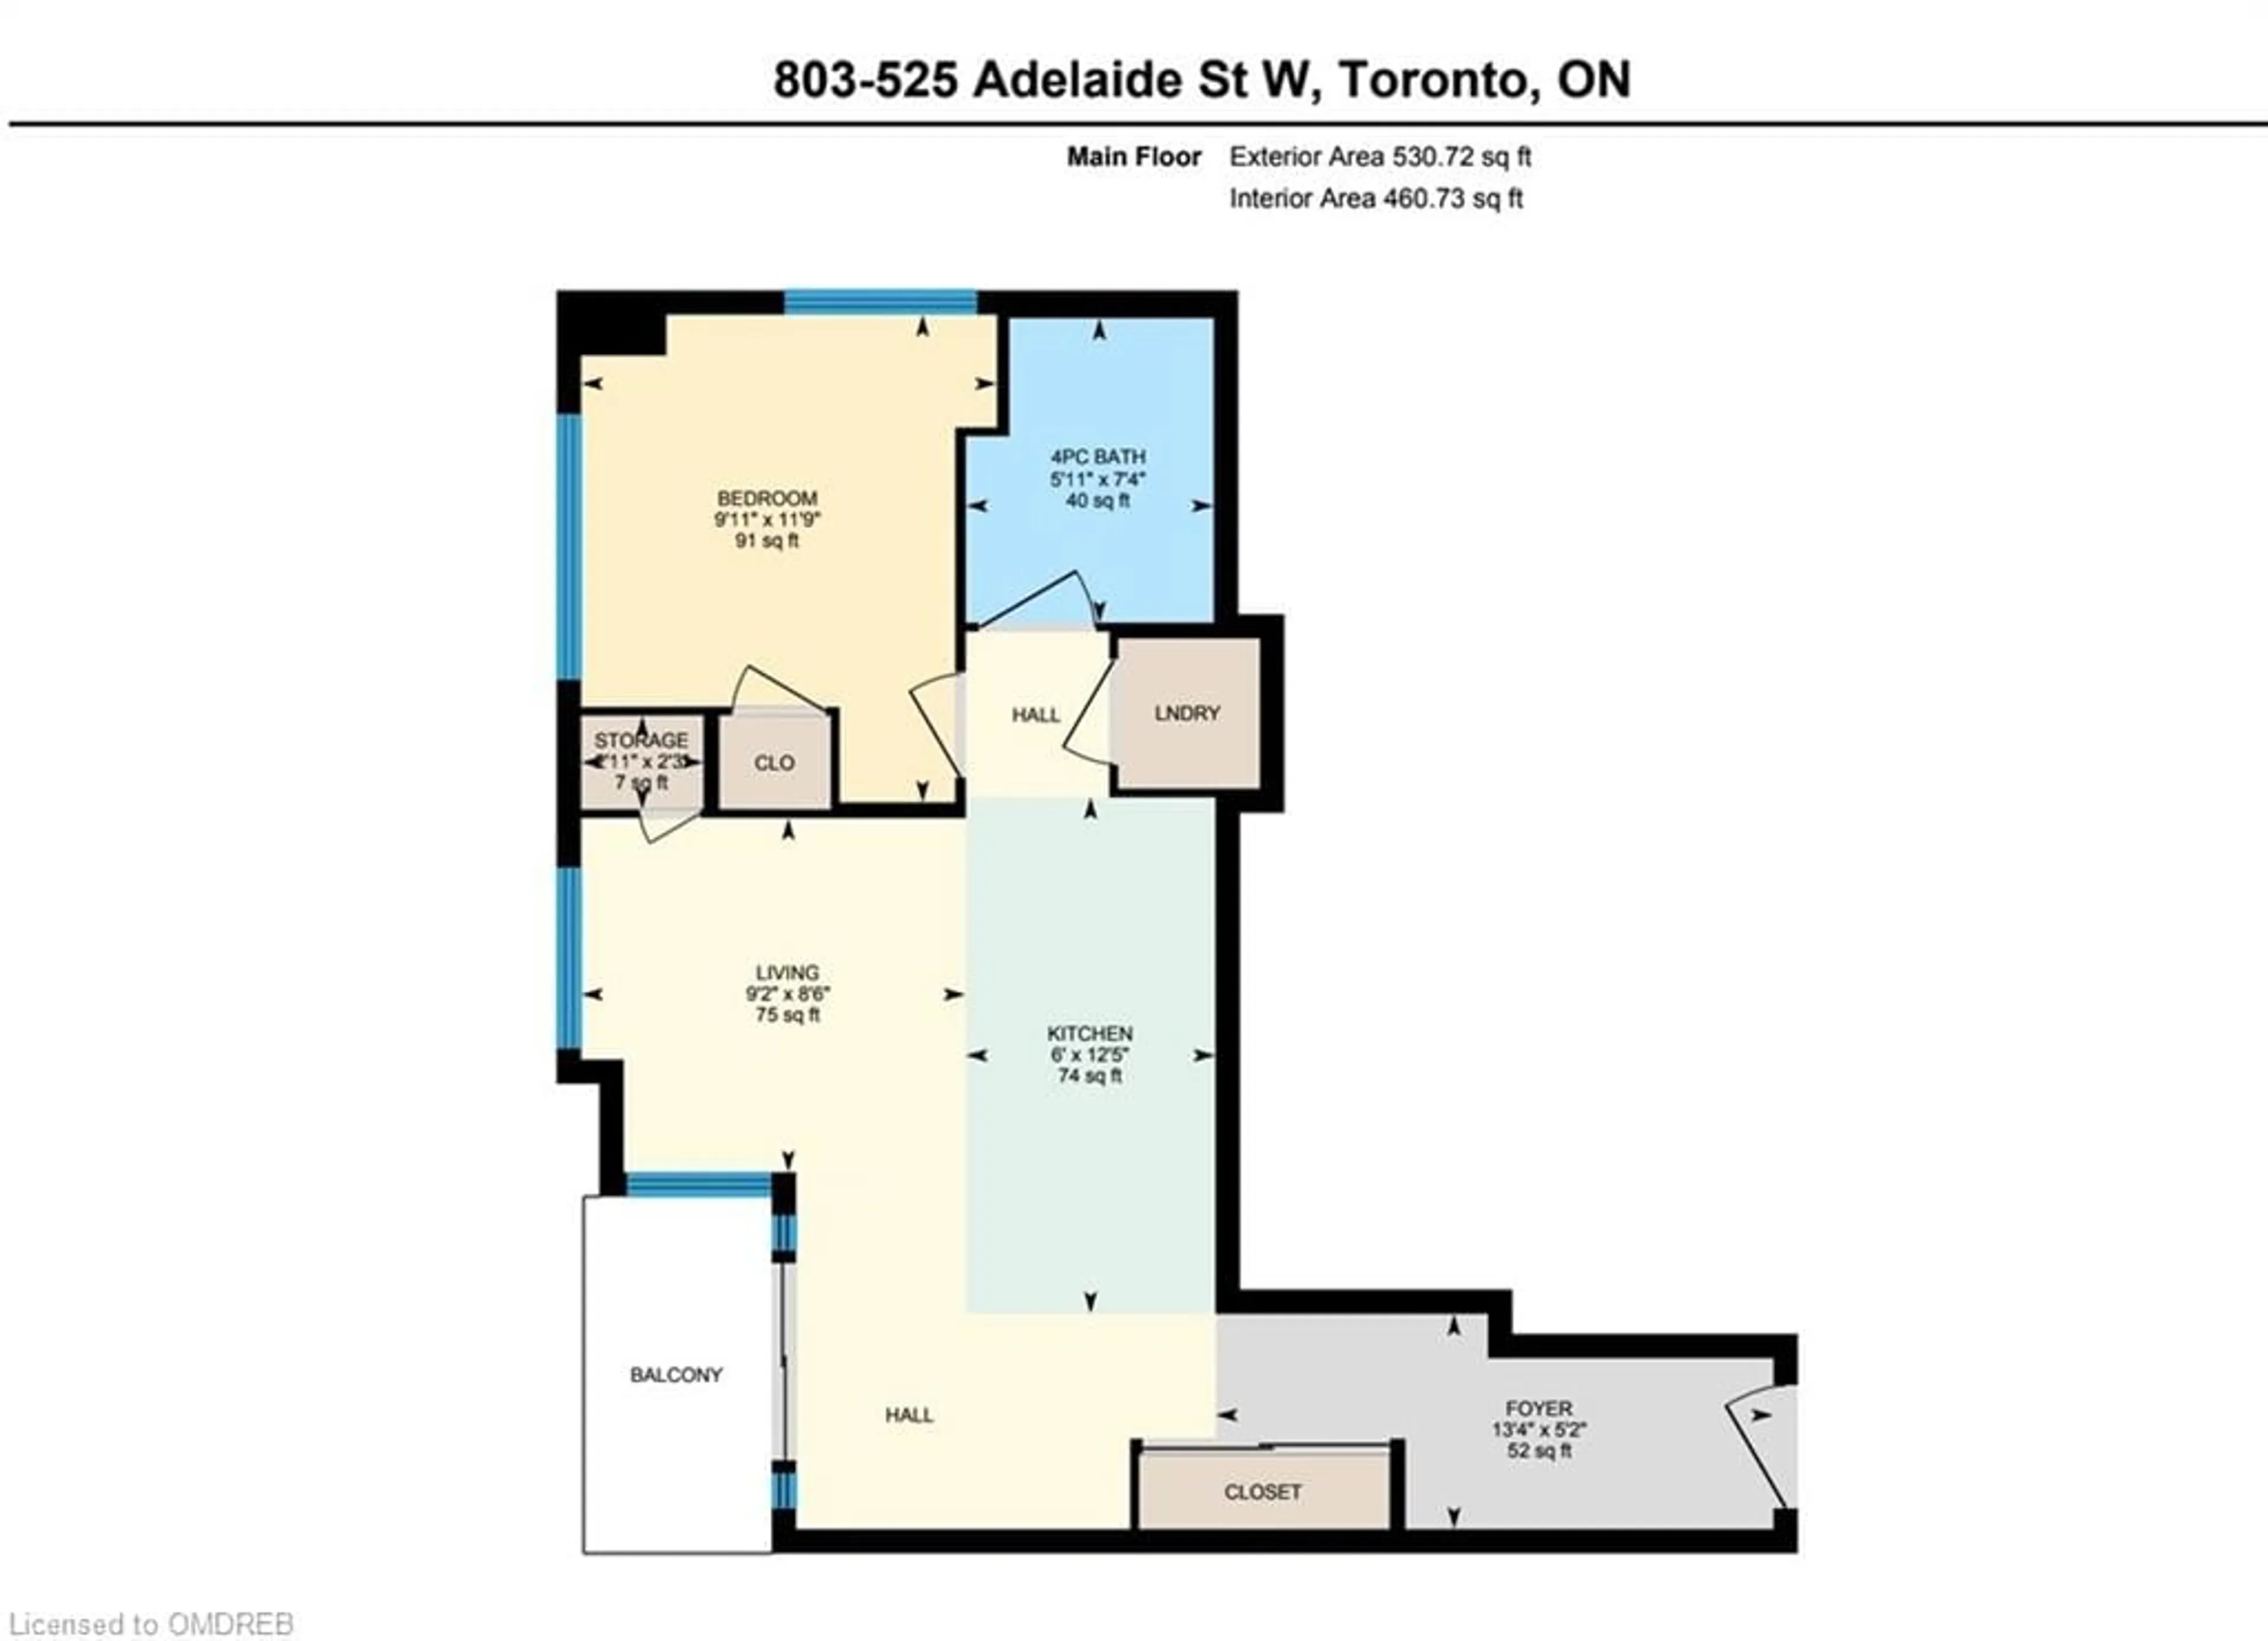 Floor plan for 525 Adelaide St #803, Toronto Ontario M5V 1T6